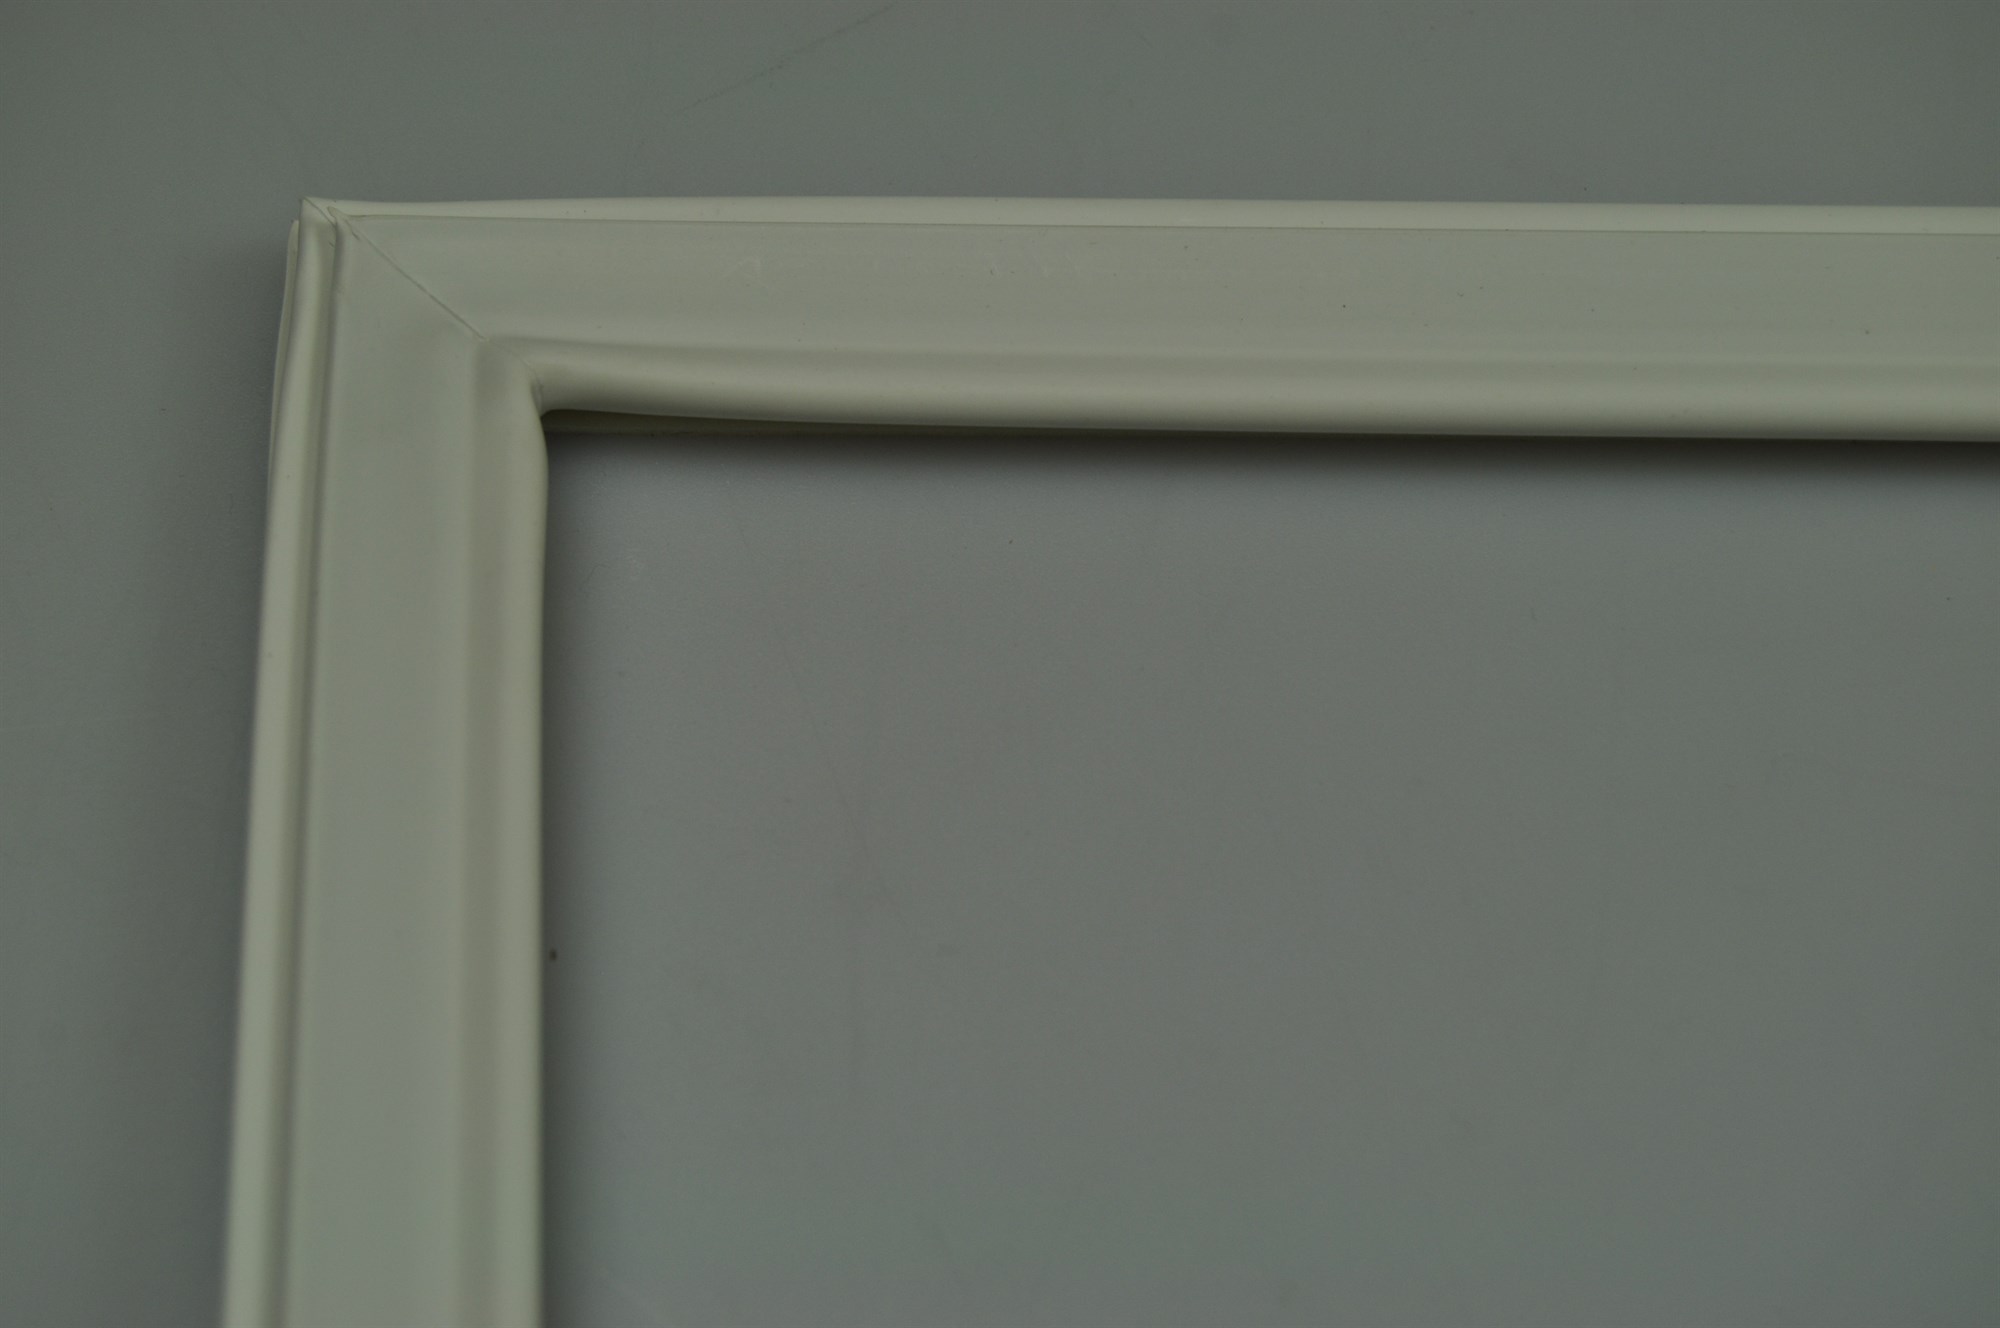 Joint de porte congélateur gris 78,2x57,2cm